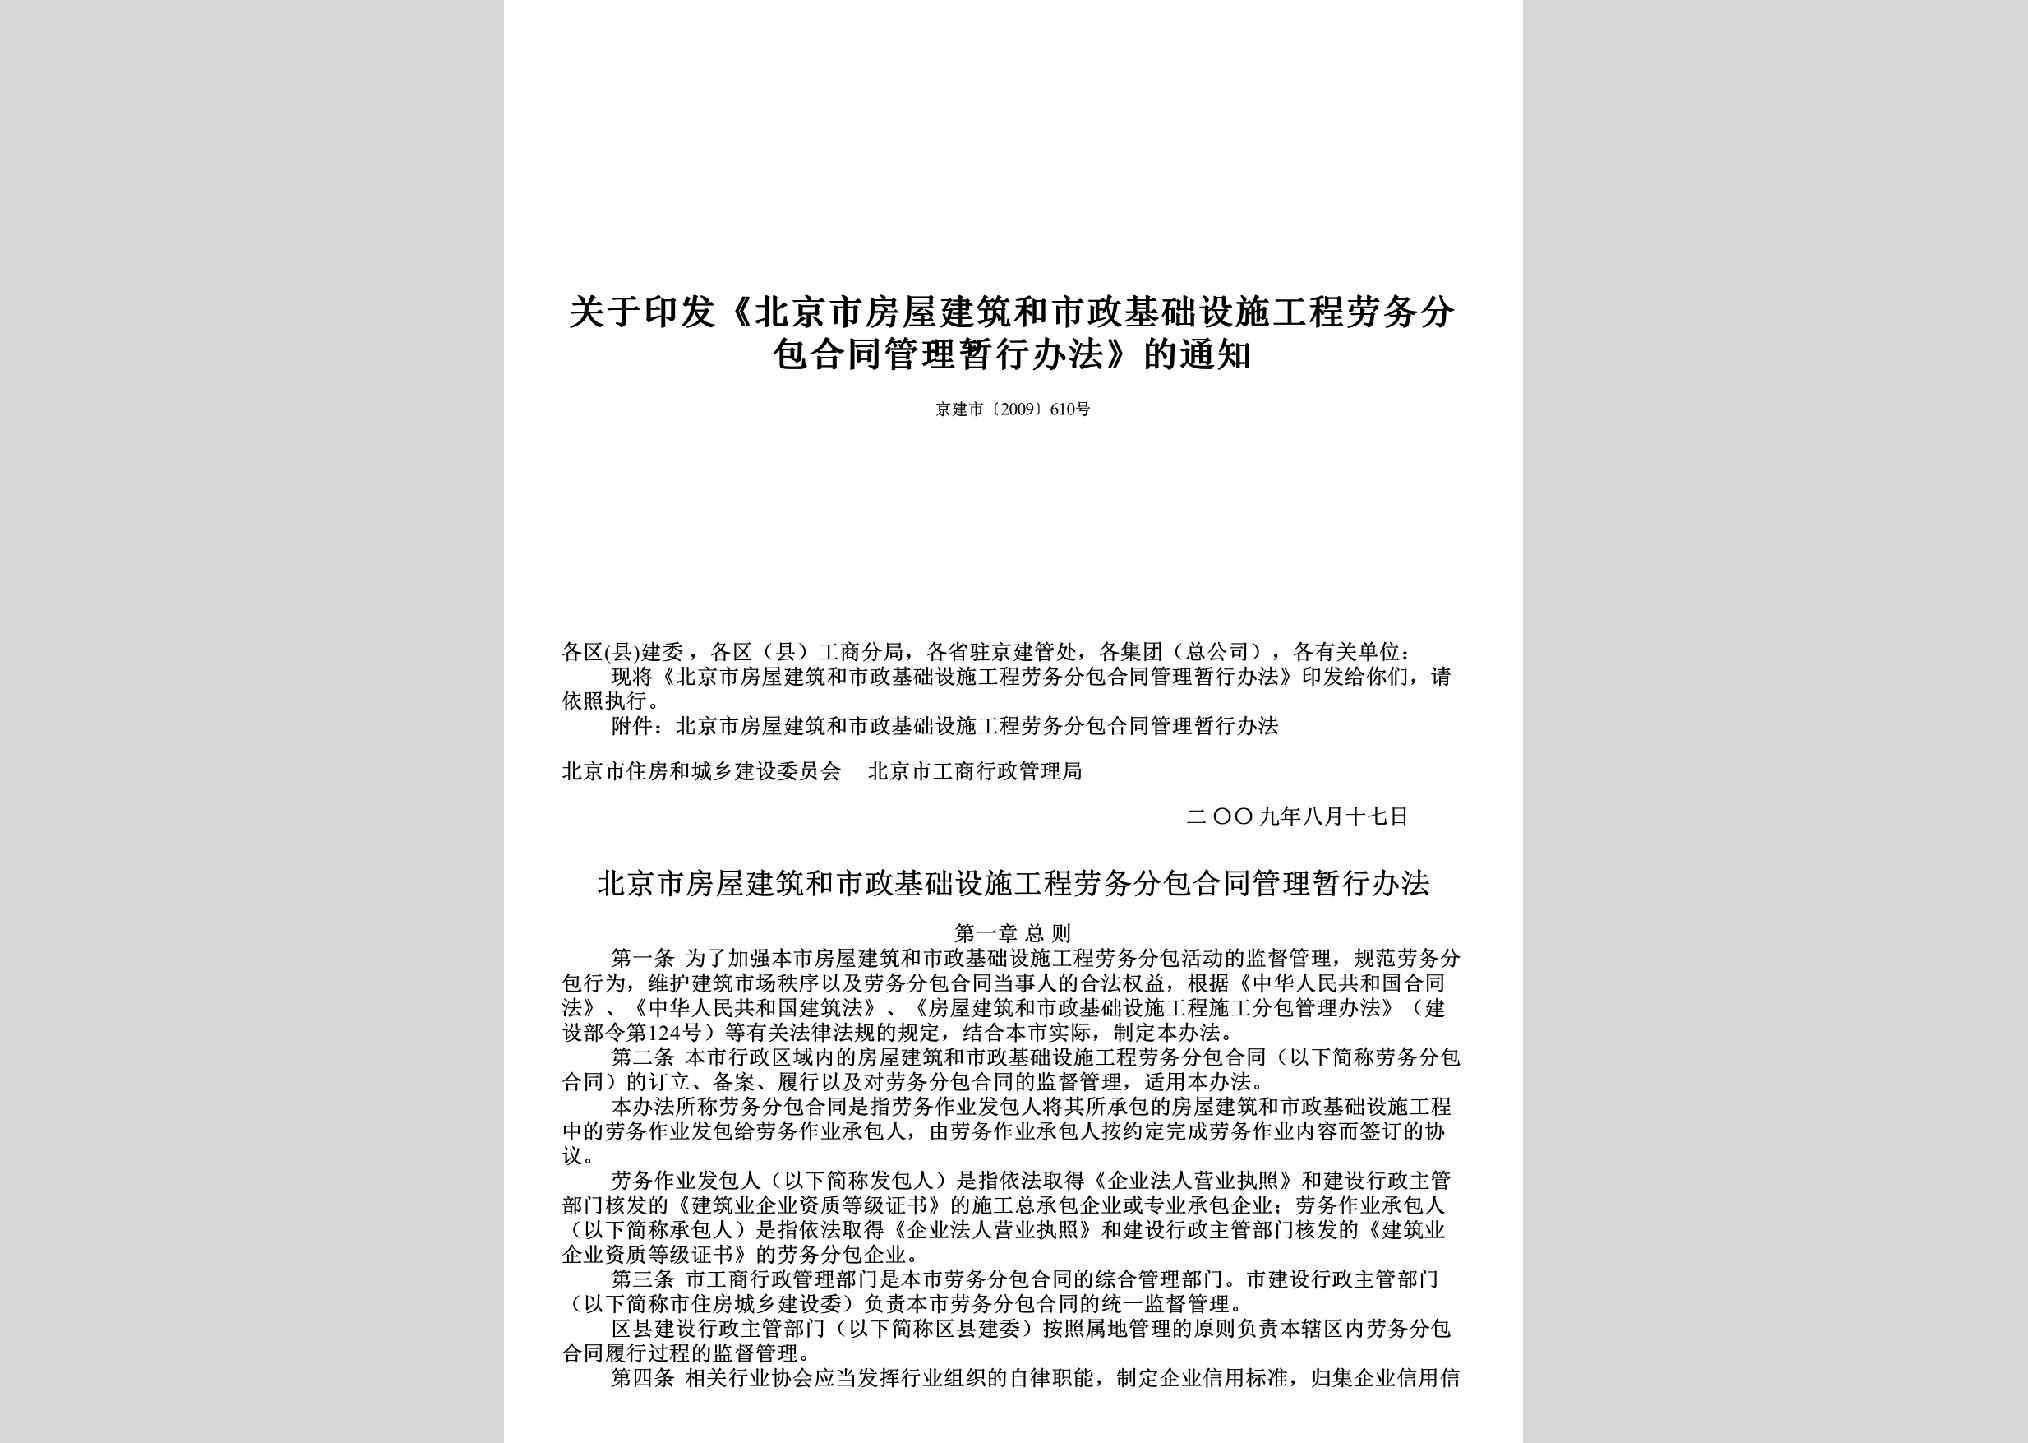 京建市[2009]610号：关于印发《北京市房屋建筑和市政基础设施工程劳务分包合同管理暂行办法》的通知